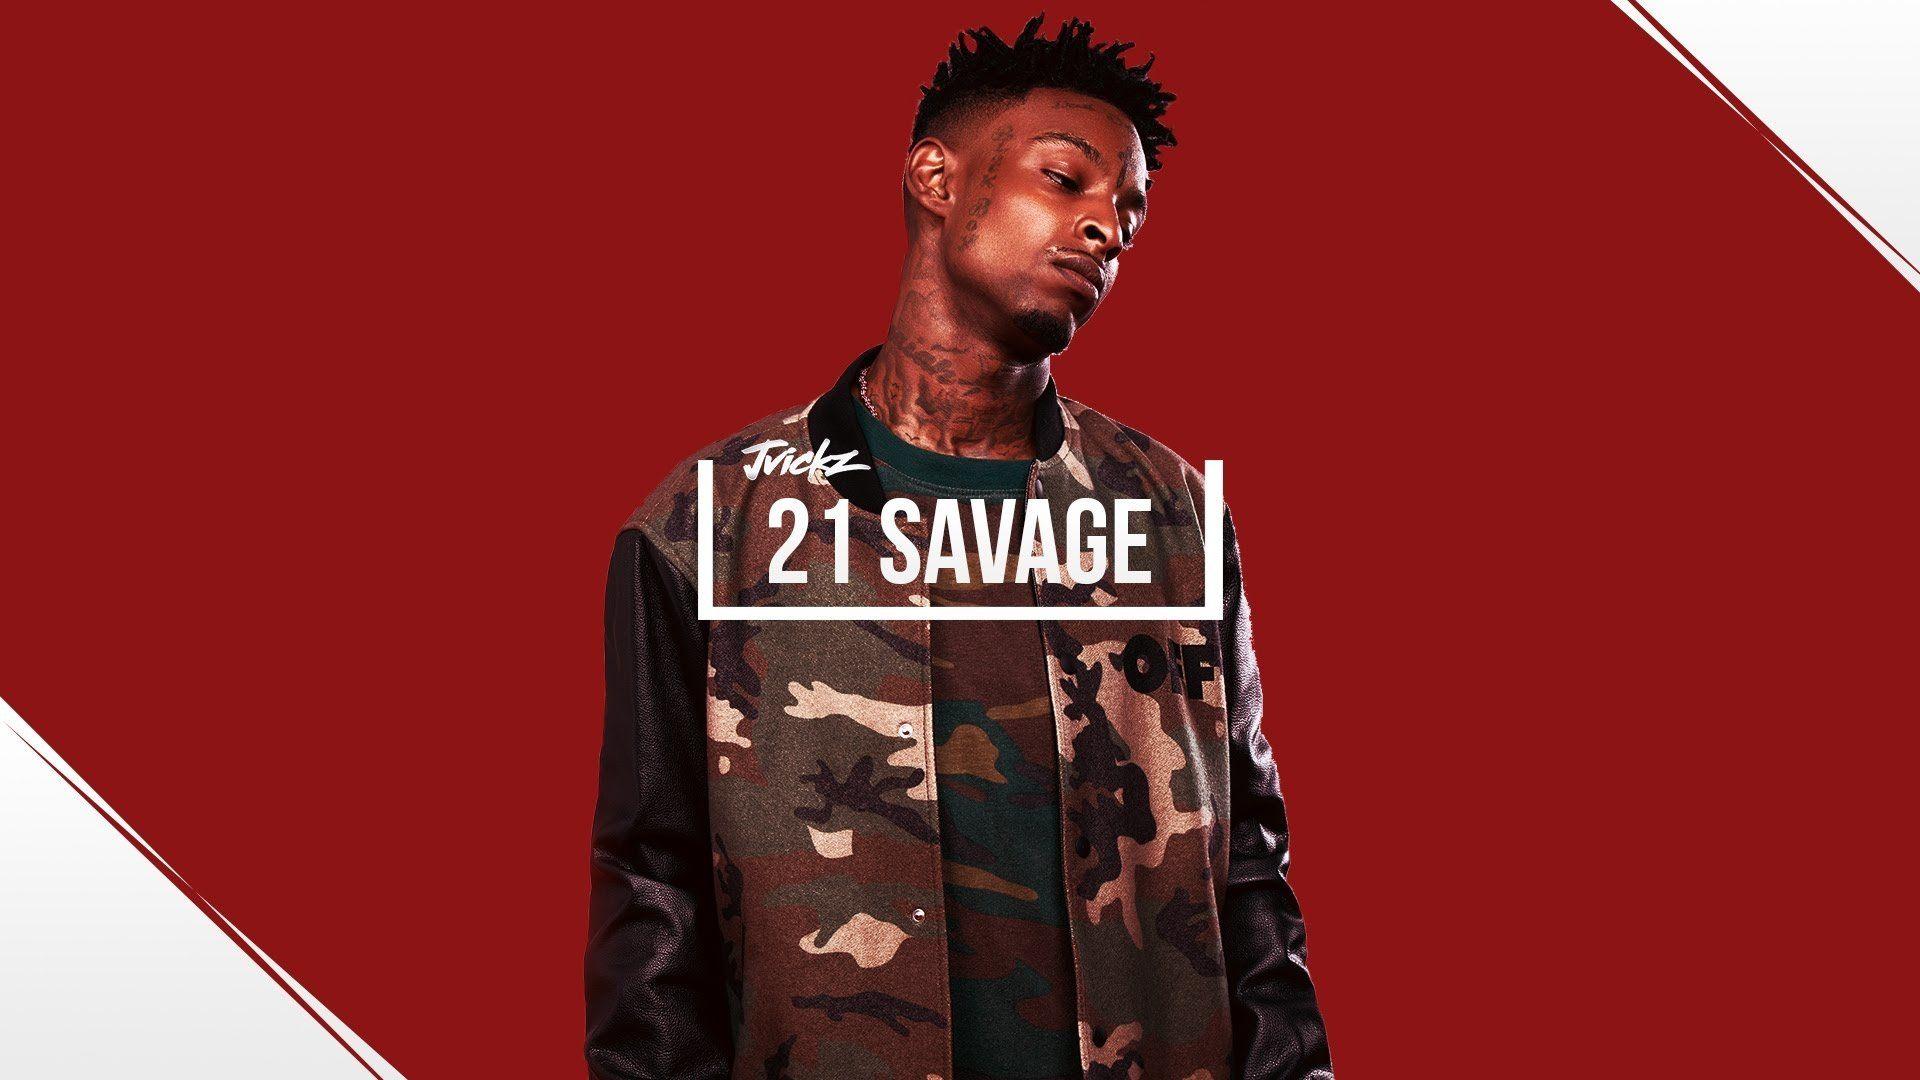 21 Savage Rapper Cartoon Wallpapers - Top Free 21 Savage ...